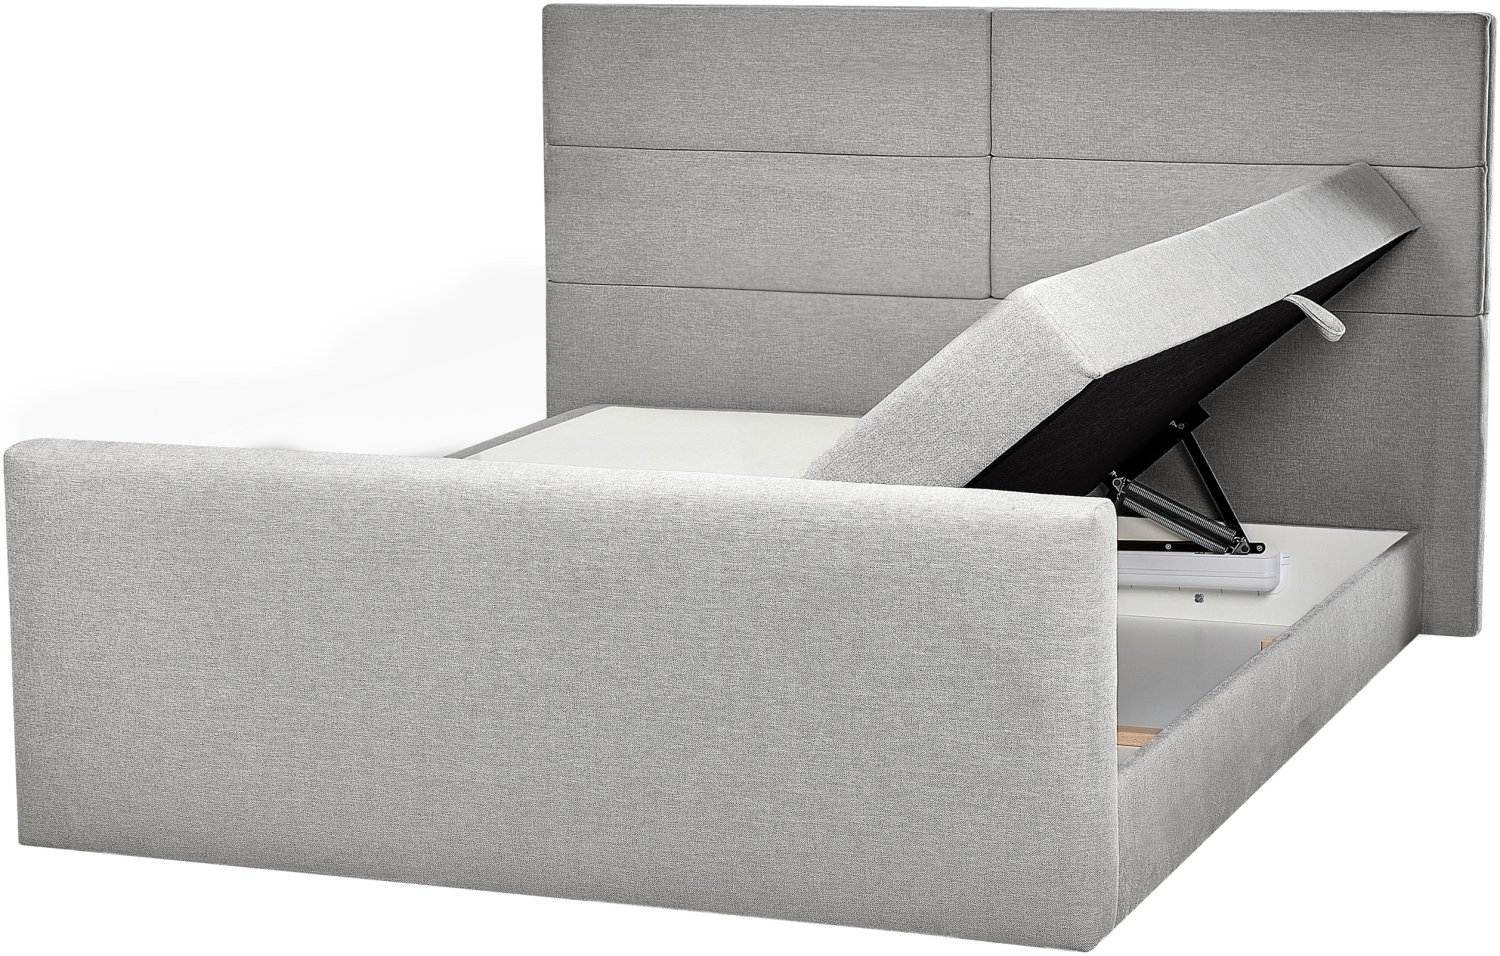 Boxspringbett Polsterbezug hellgrau mit Bettkasten hochklappbar 180 x 200 cm ARISTOCRAT Bild 1